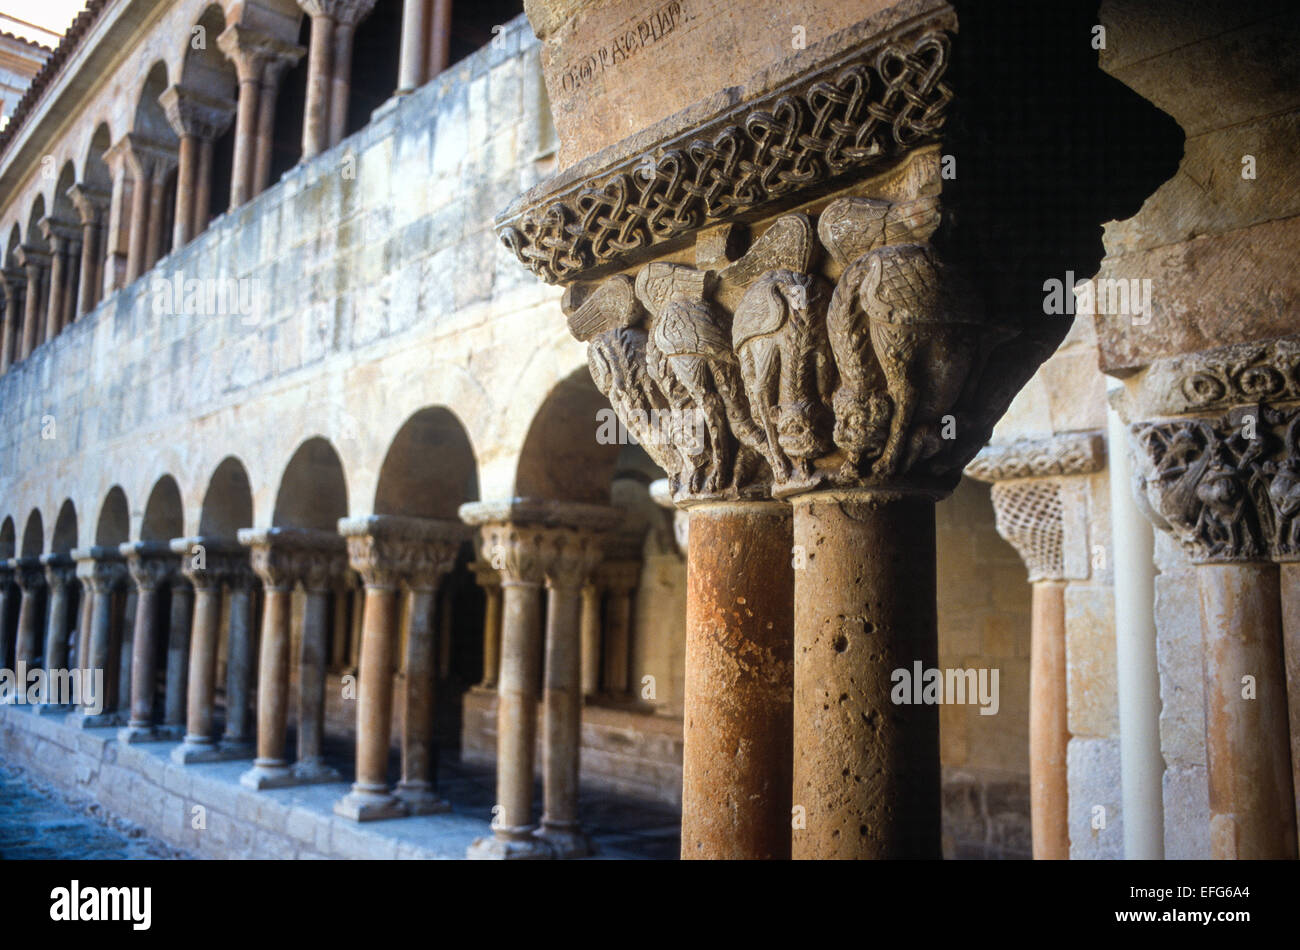 Capiteles románicos en el Claustro de Santo Domingo de Silos monasterio benedictino (11-12º siglos). La provincia de Burgos Foto de stock